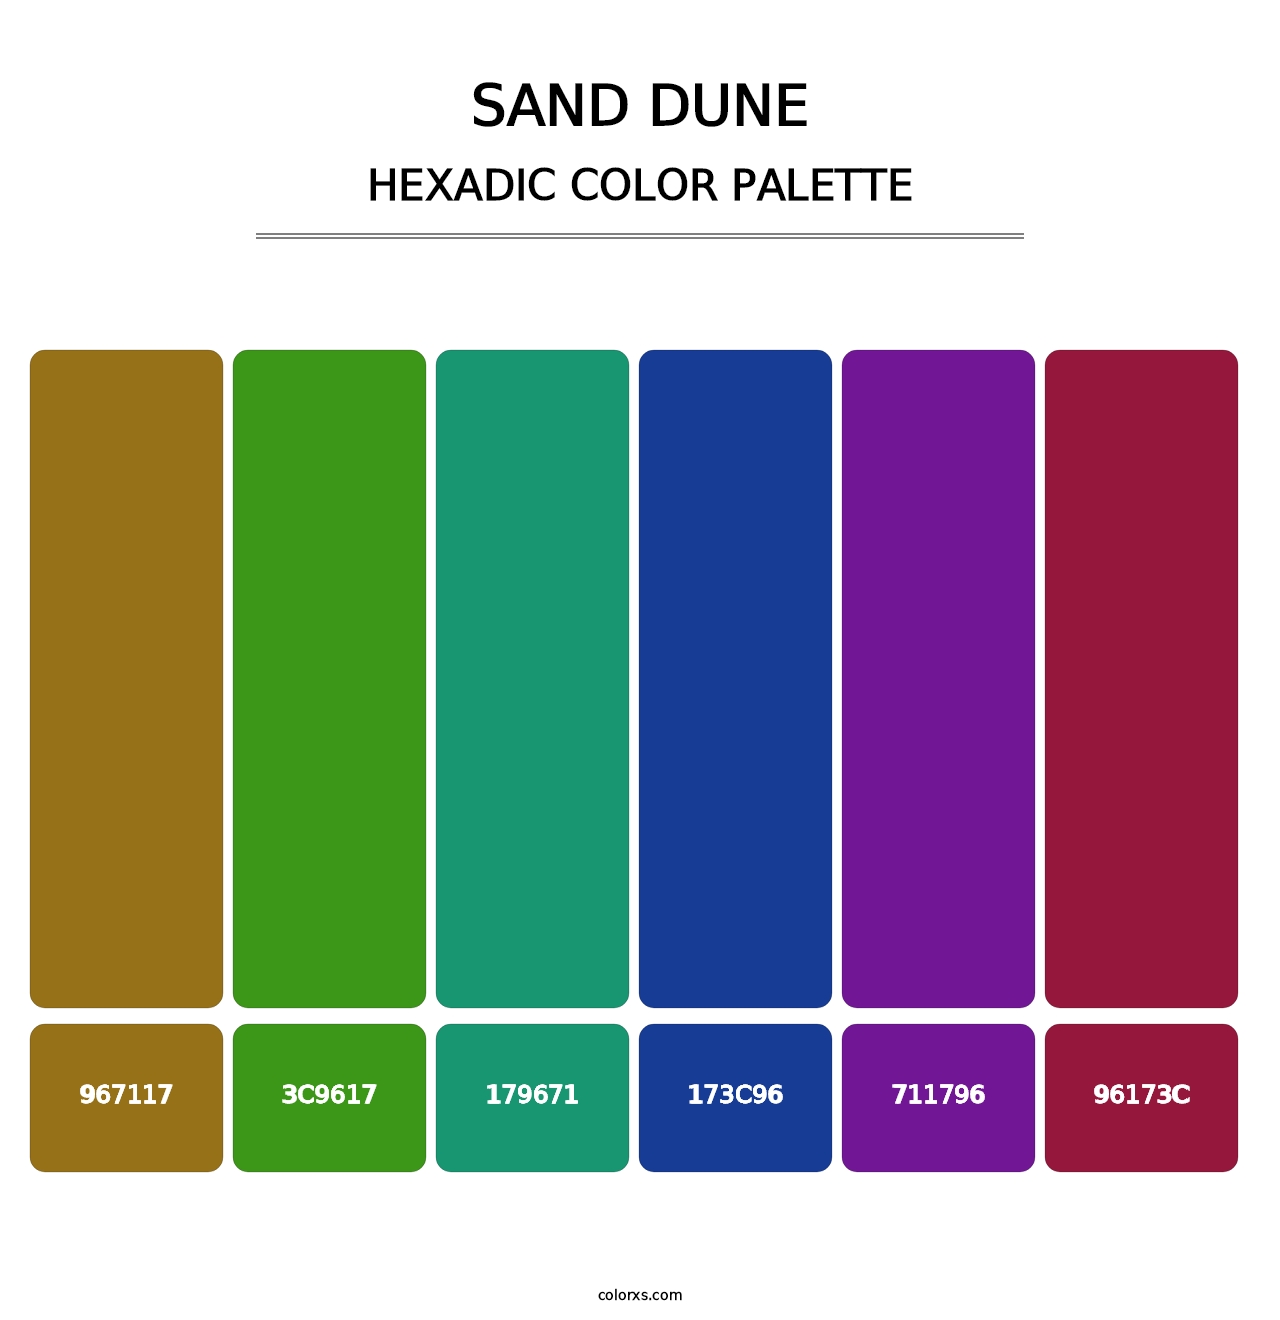 Sand Dune - Hexadic Color Palette